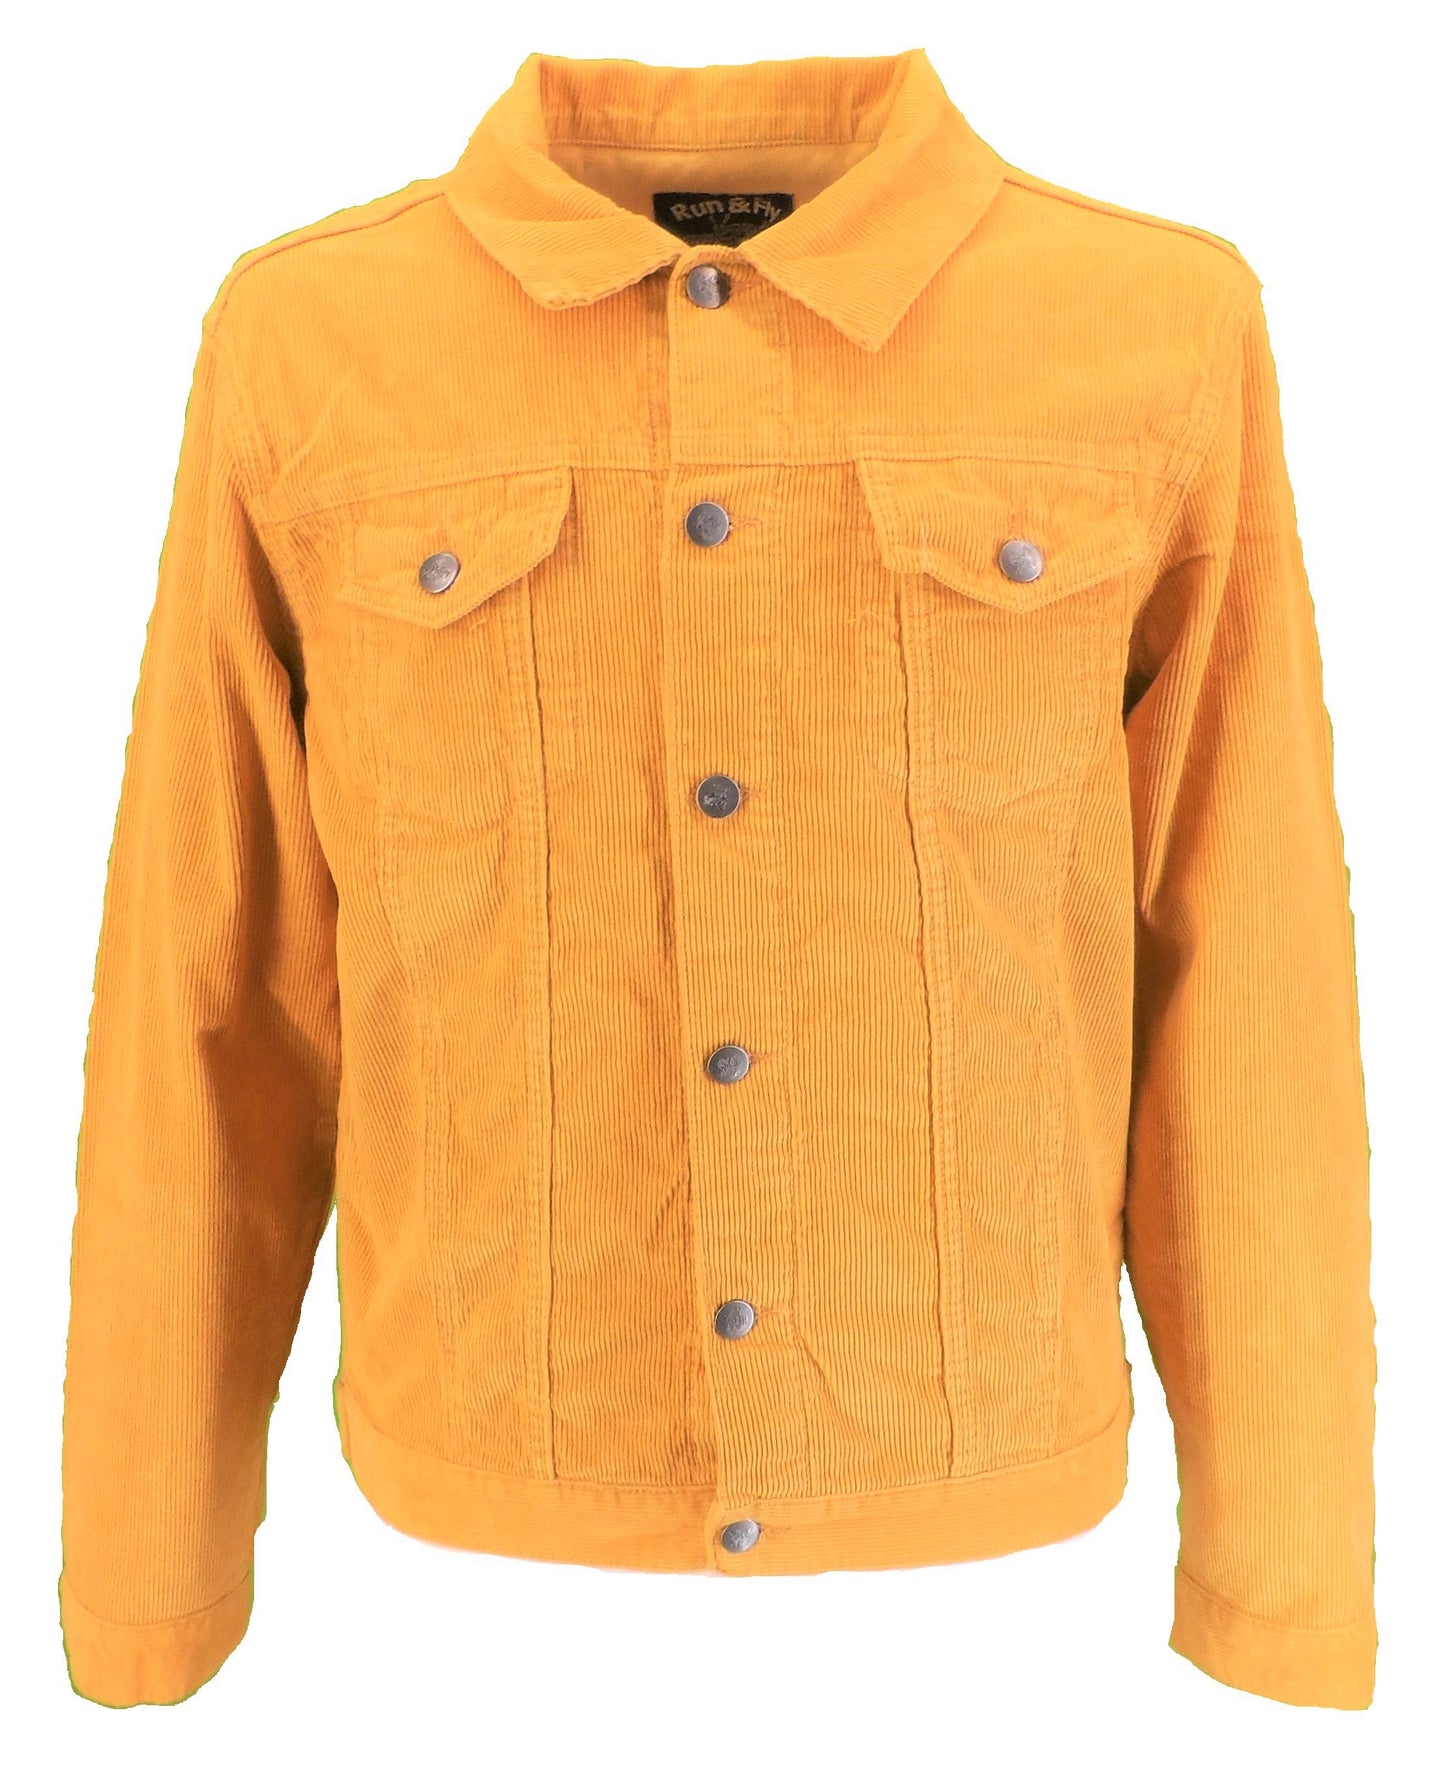 Run & Fly chaqueta de camionero occidental de cordón dorado retro vintage de los años 60 para hombre